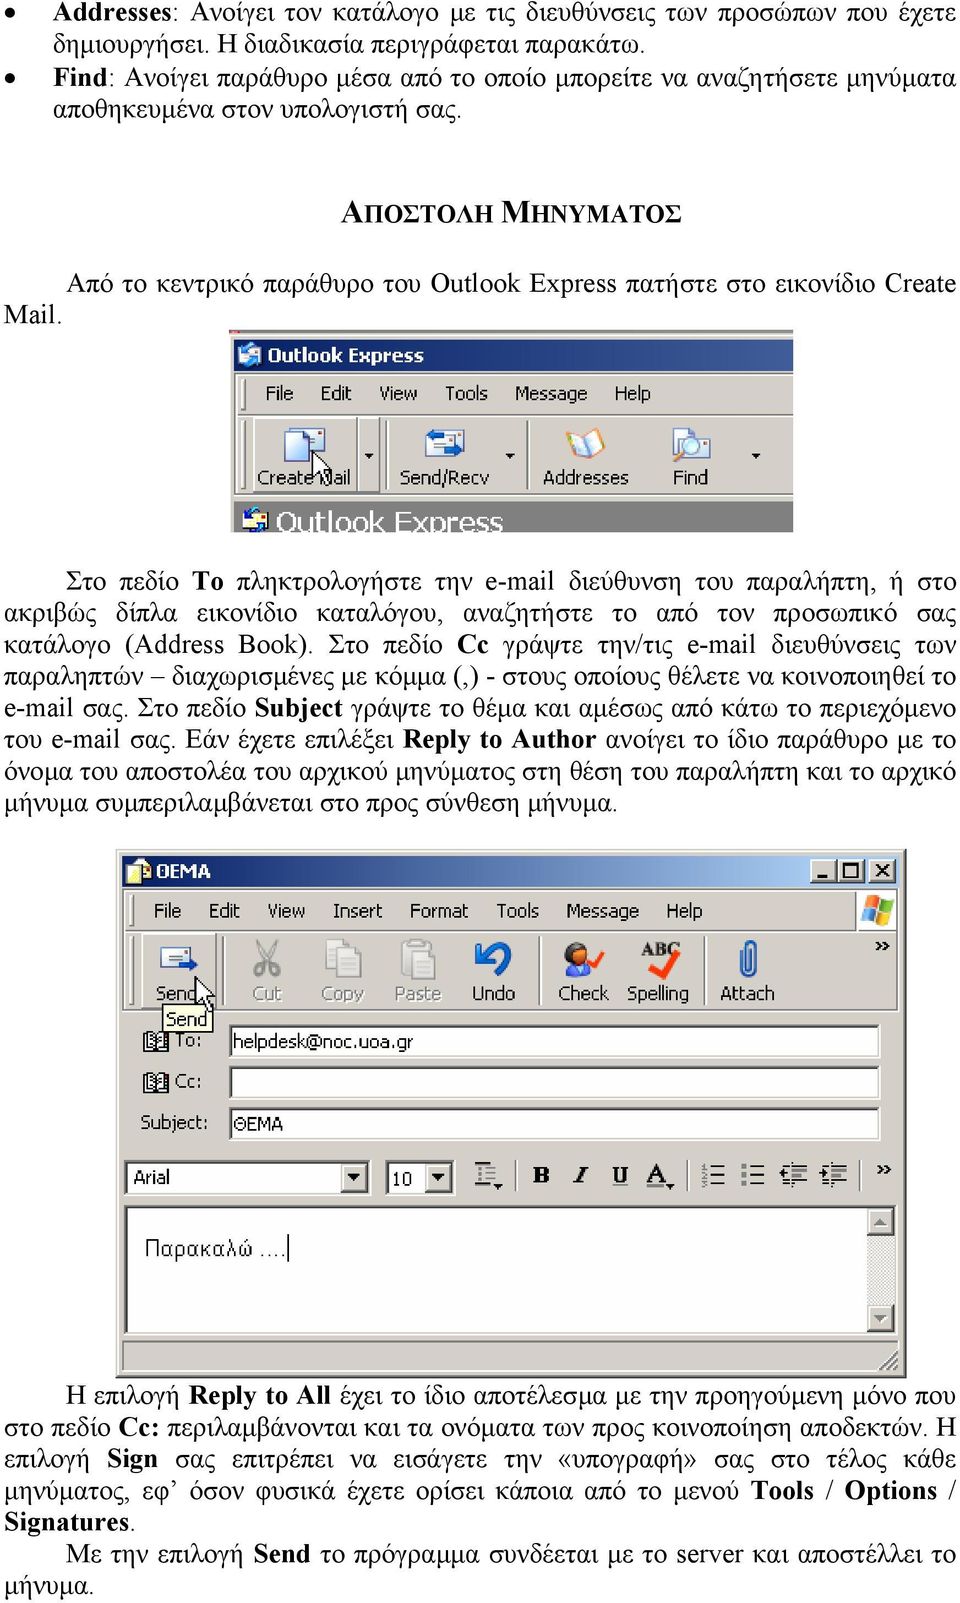 ΑΠΟΣΤΟΛΗ ΜΗΝΥΜΑΤΟΣ Από το κεντρικό παράθυρο του Outlook Express πατήστε στο εικονίδιο Create Mail.